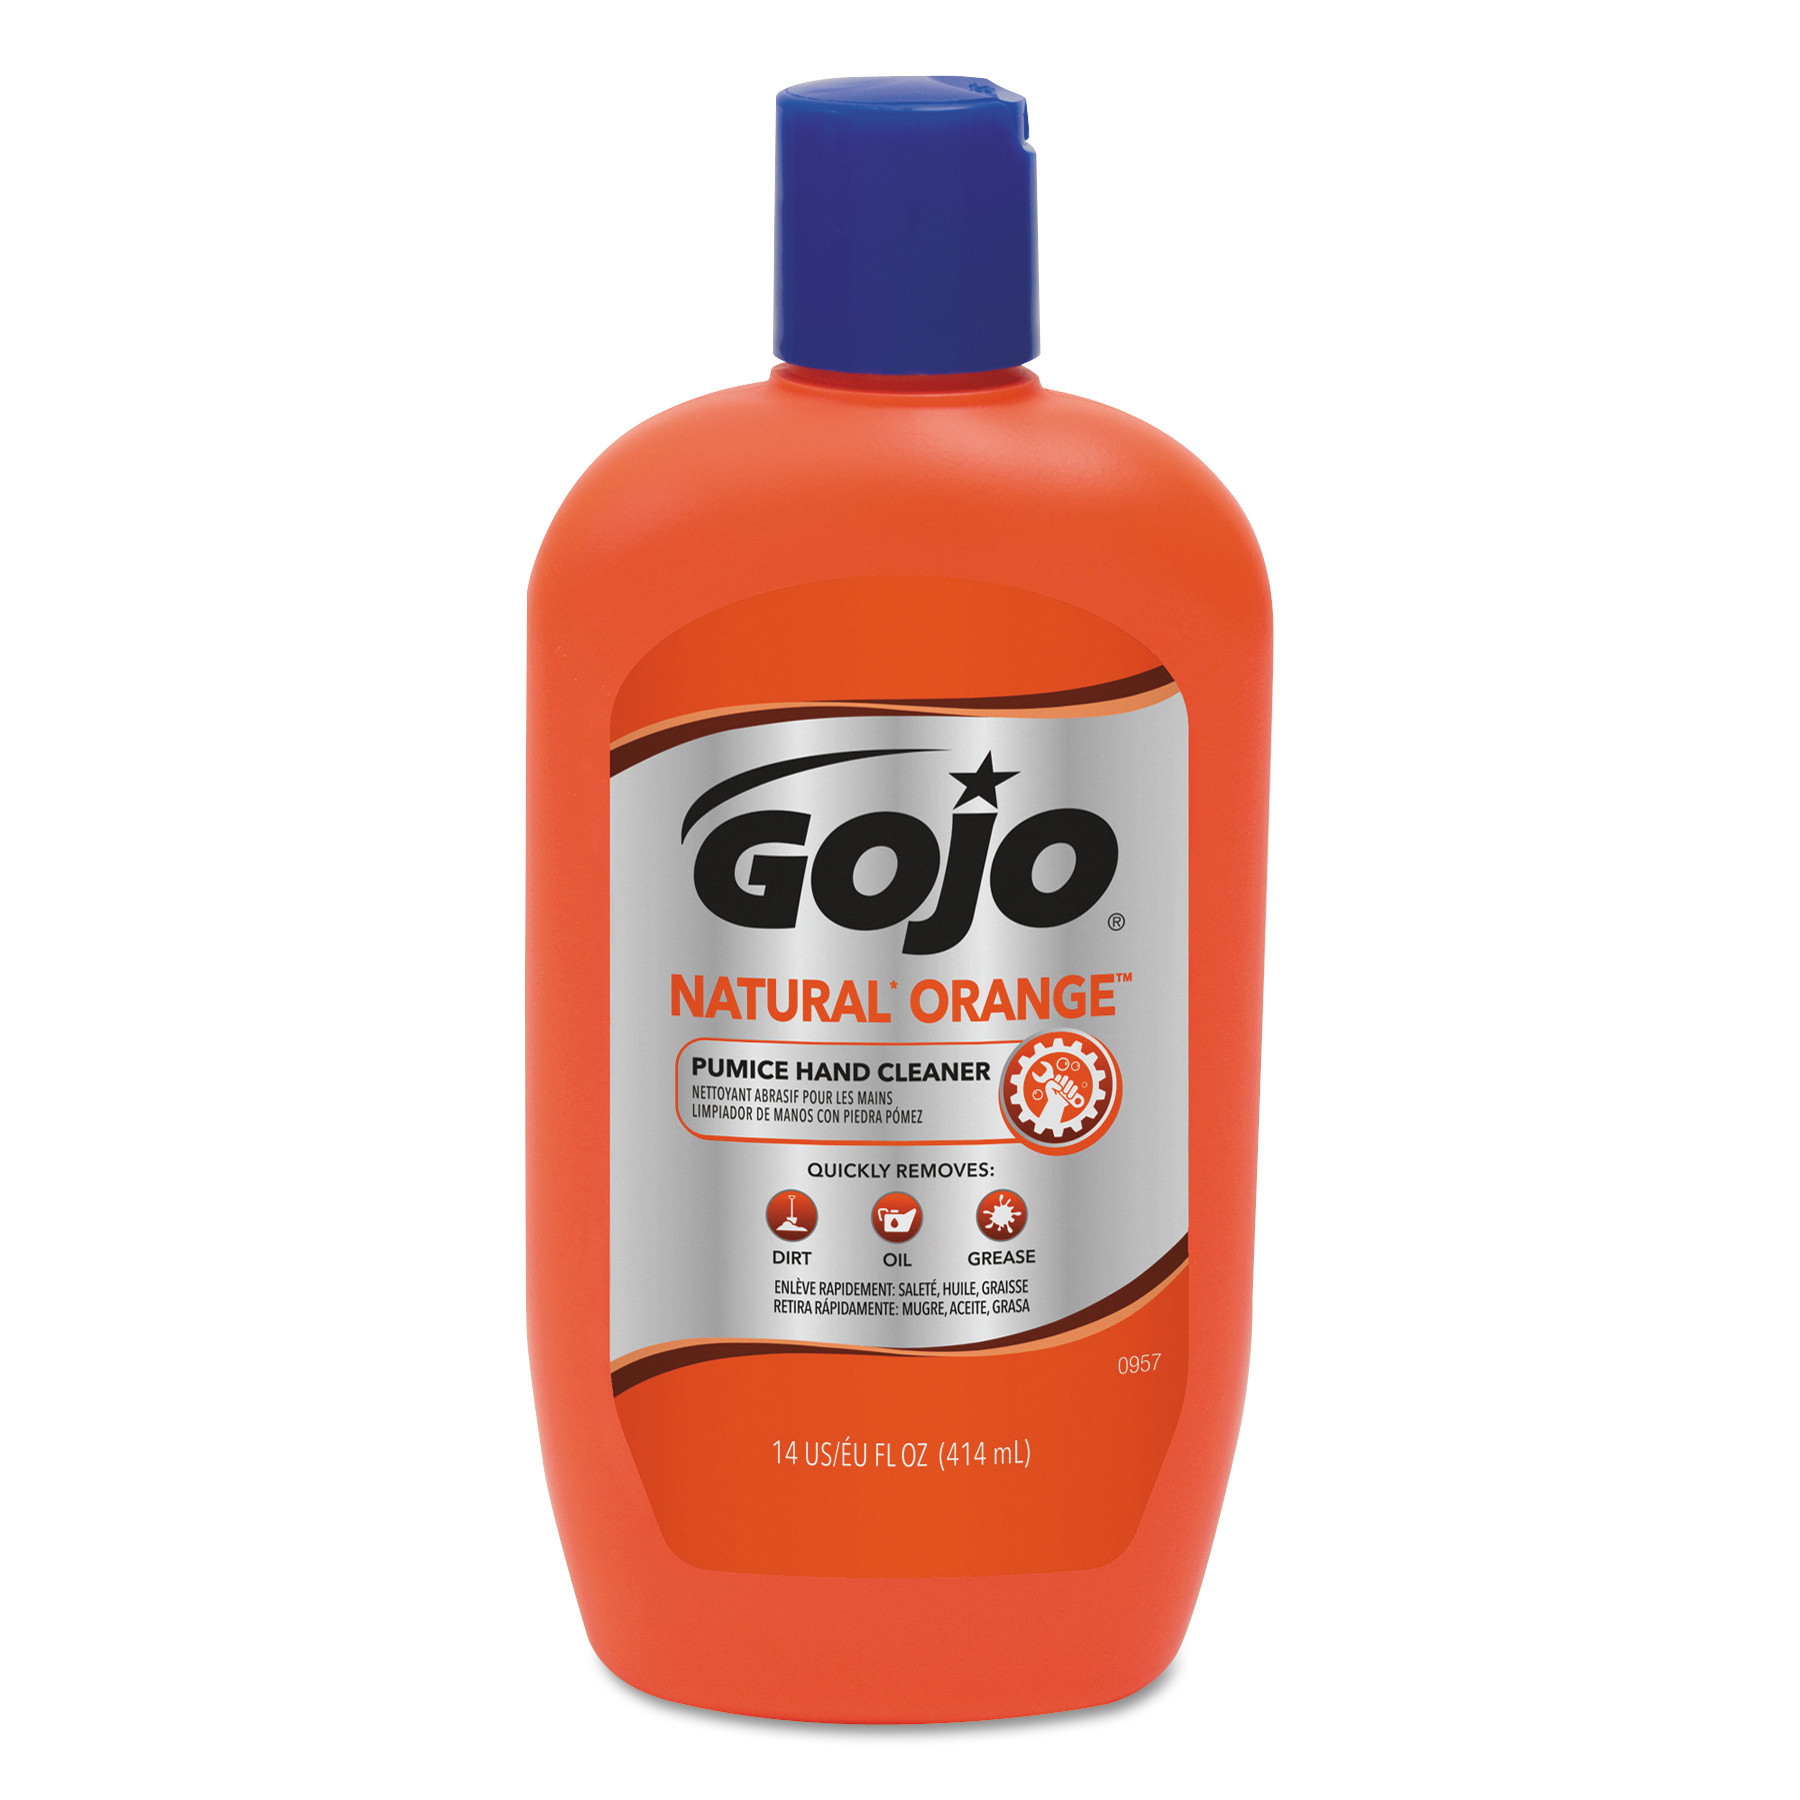 GOJO® NATURAL ORANGE Pumice Hand Cleaner, Citrus, 14 oz Bottle, 12/Carton  Quipply